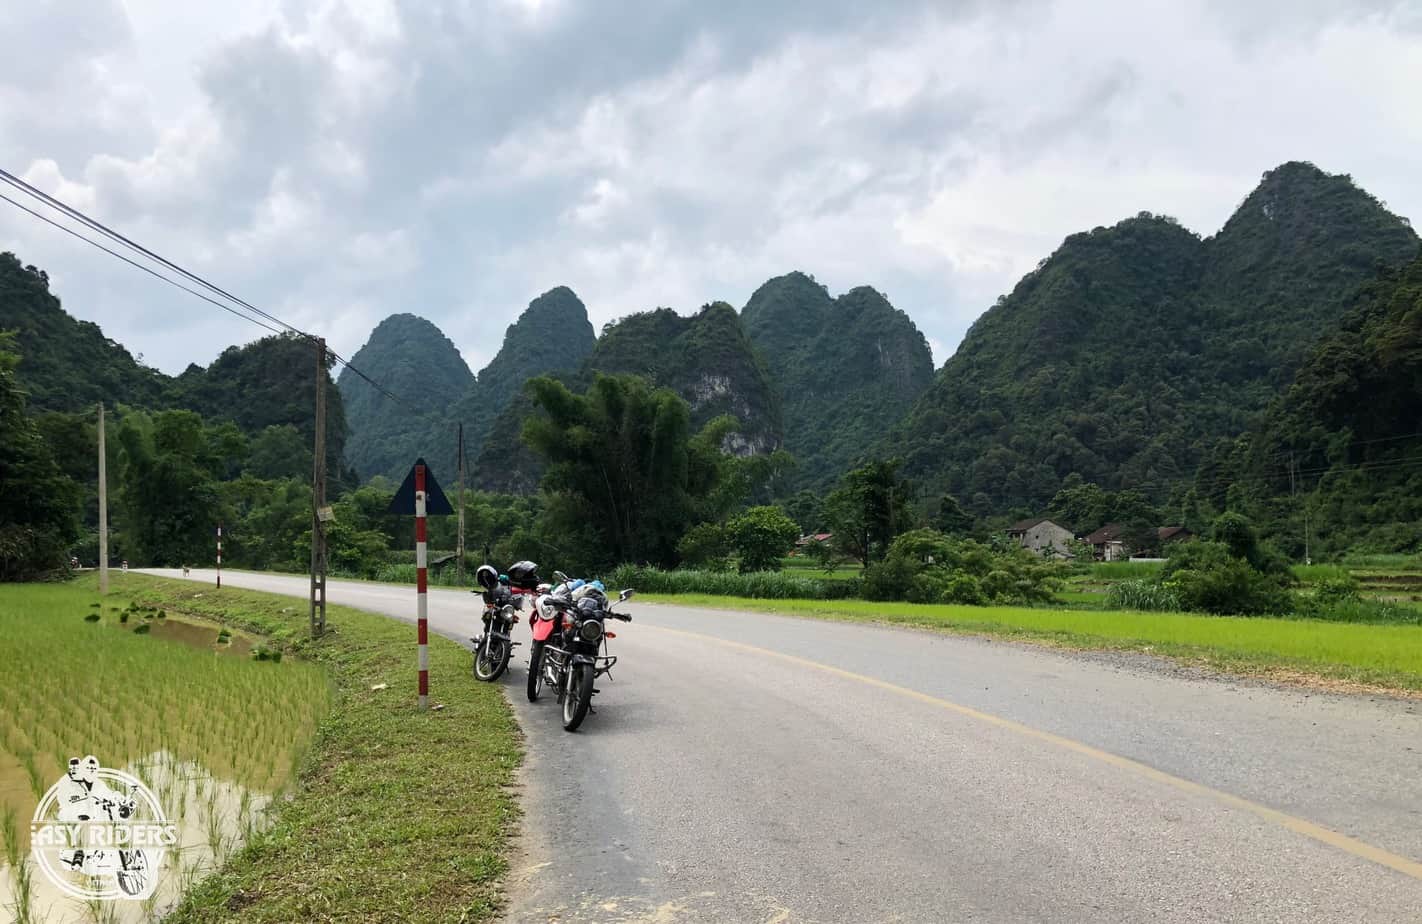 Day 3: Khe Sanh – Phong Nha (220 km – 7 hours riding)